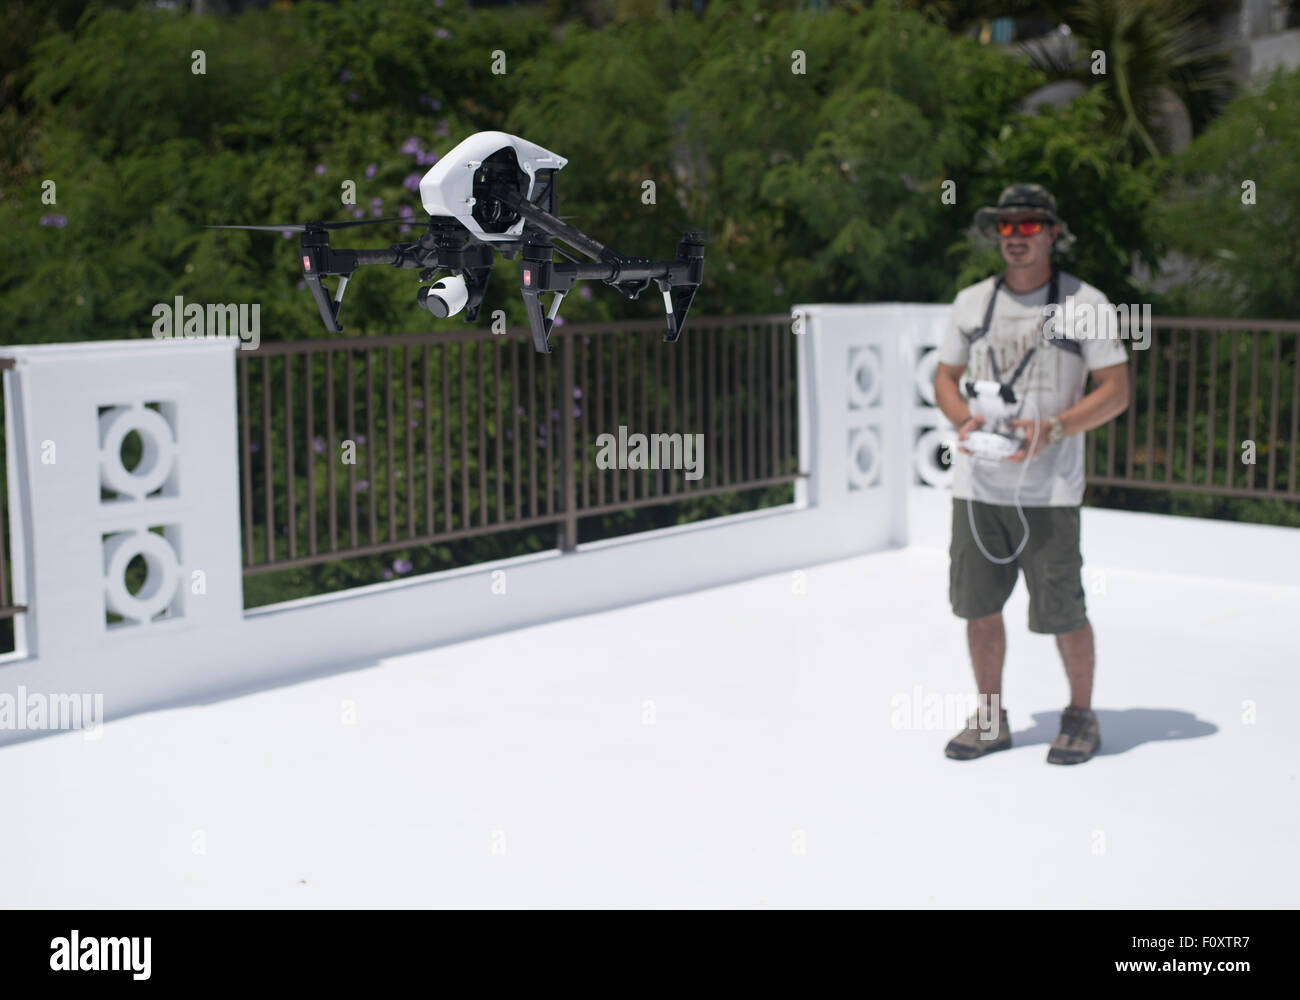 Contrôle de l'homme inspire un drone DJI quadcopter commerciaux et récréatifs véhicule aérien pour la photographie aérienne Banque D'Images